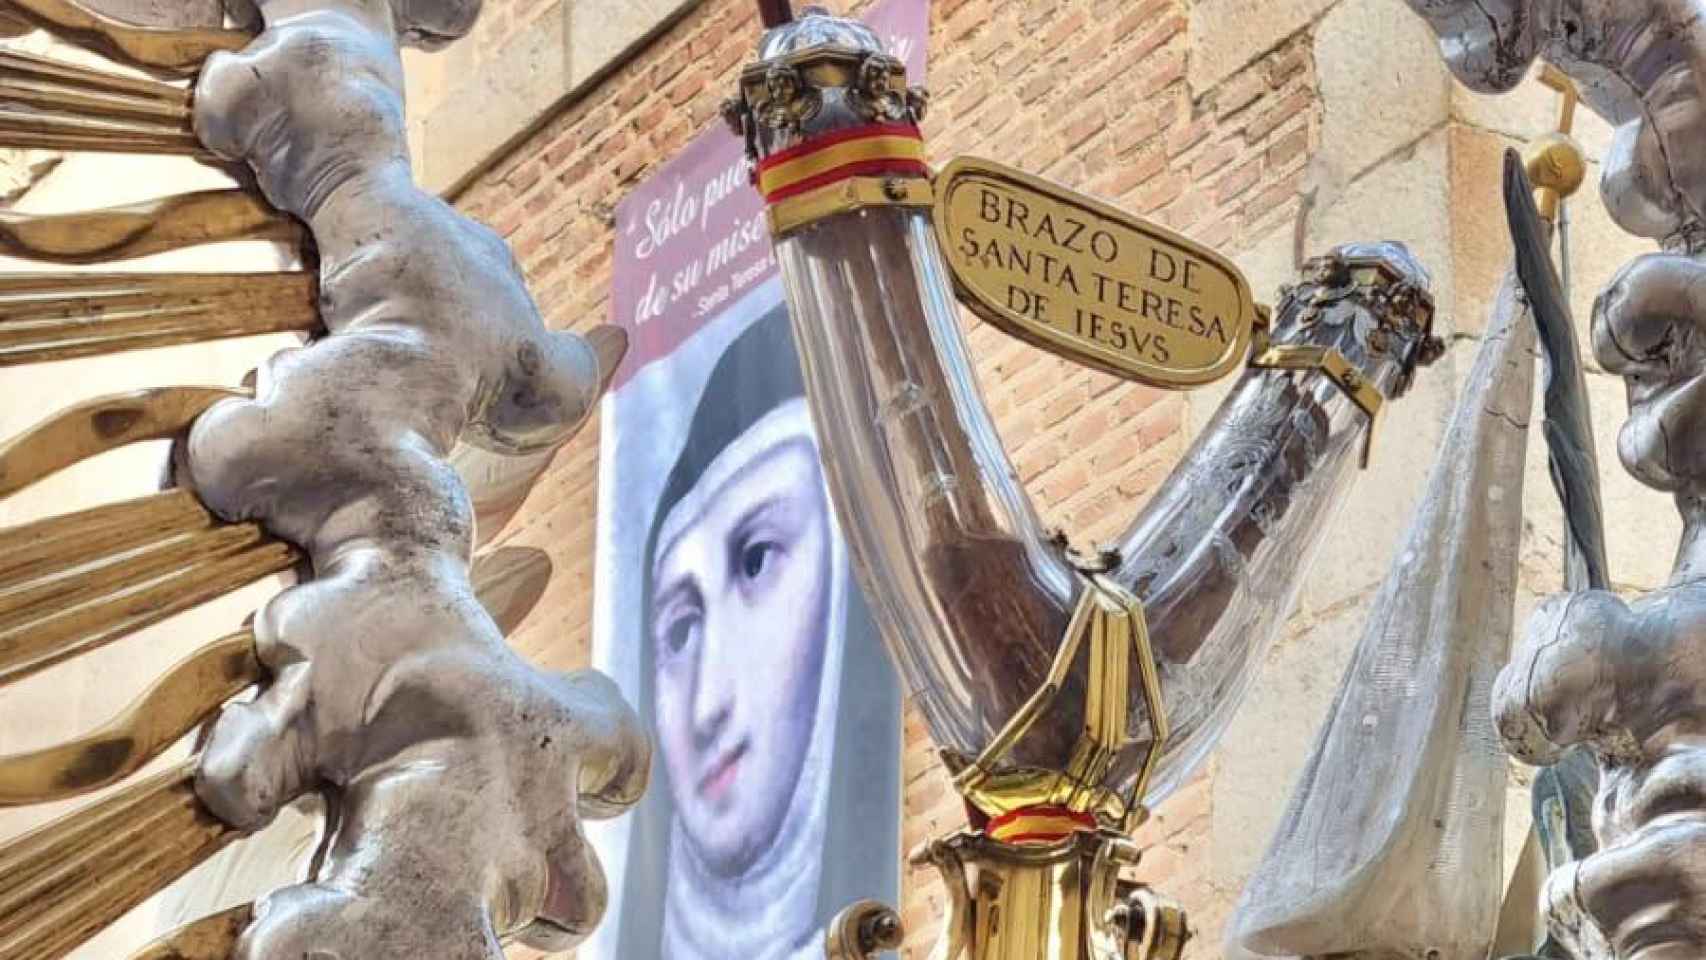 Imágenes de la procesión de Santa Teresa en Alba de Tormes